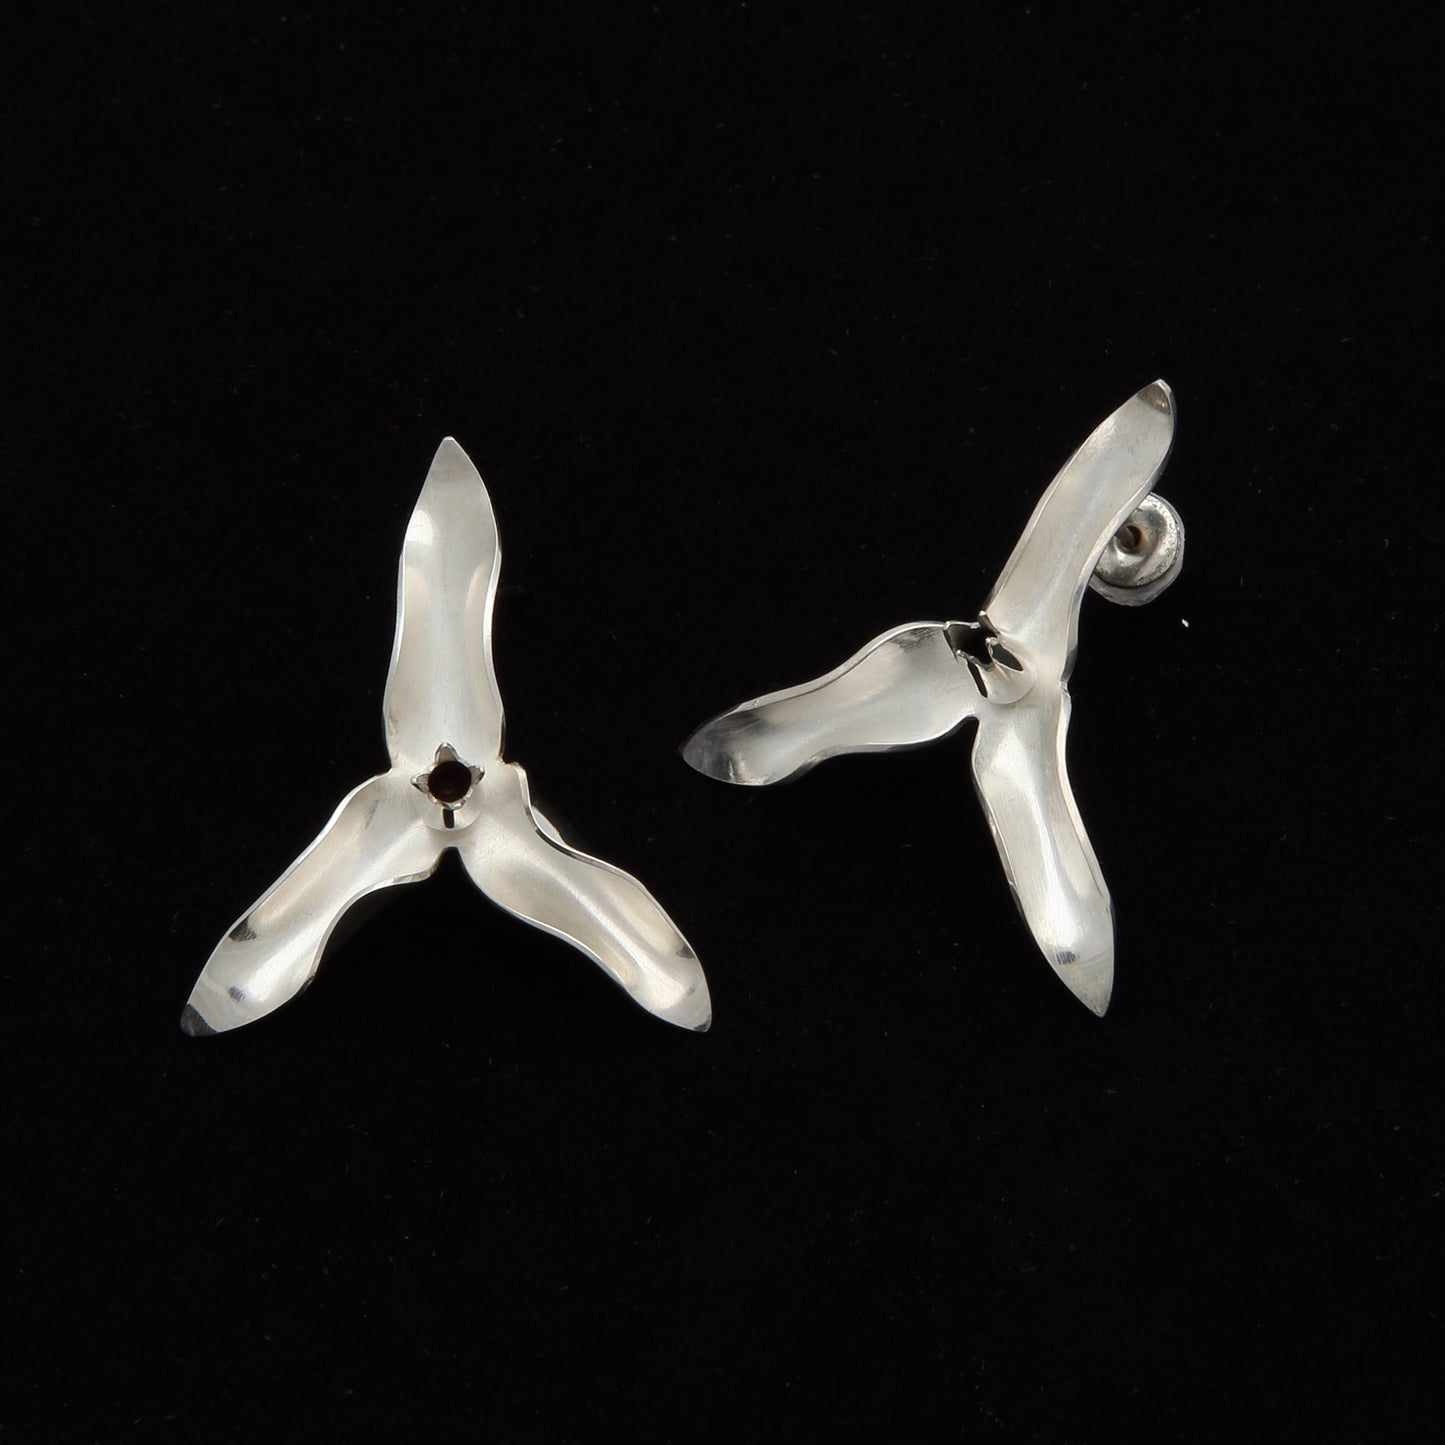 Trillium Flower earrings on post